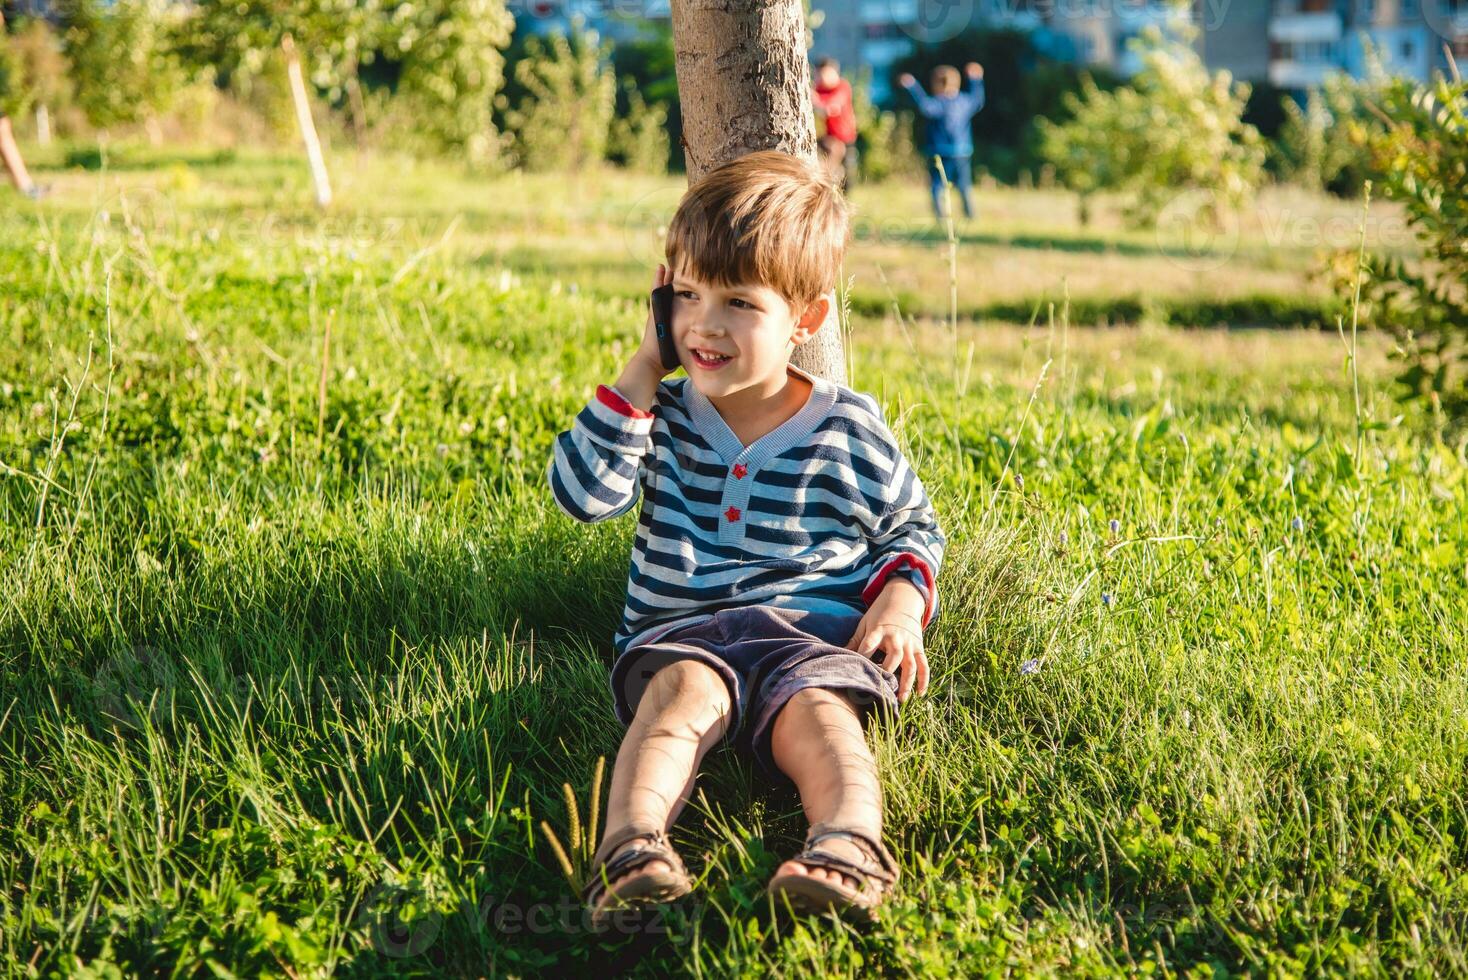 linda chico sentado en el césped habla por teléfono en el verano a puesta de sol. el niño comunica en un móvil foto